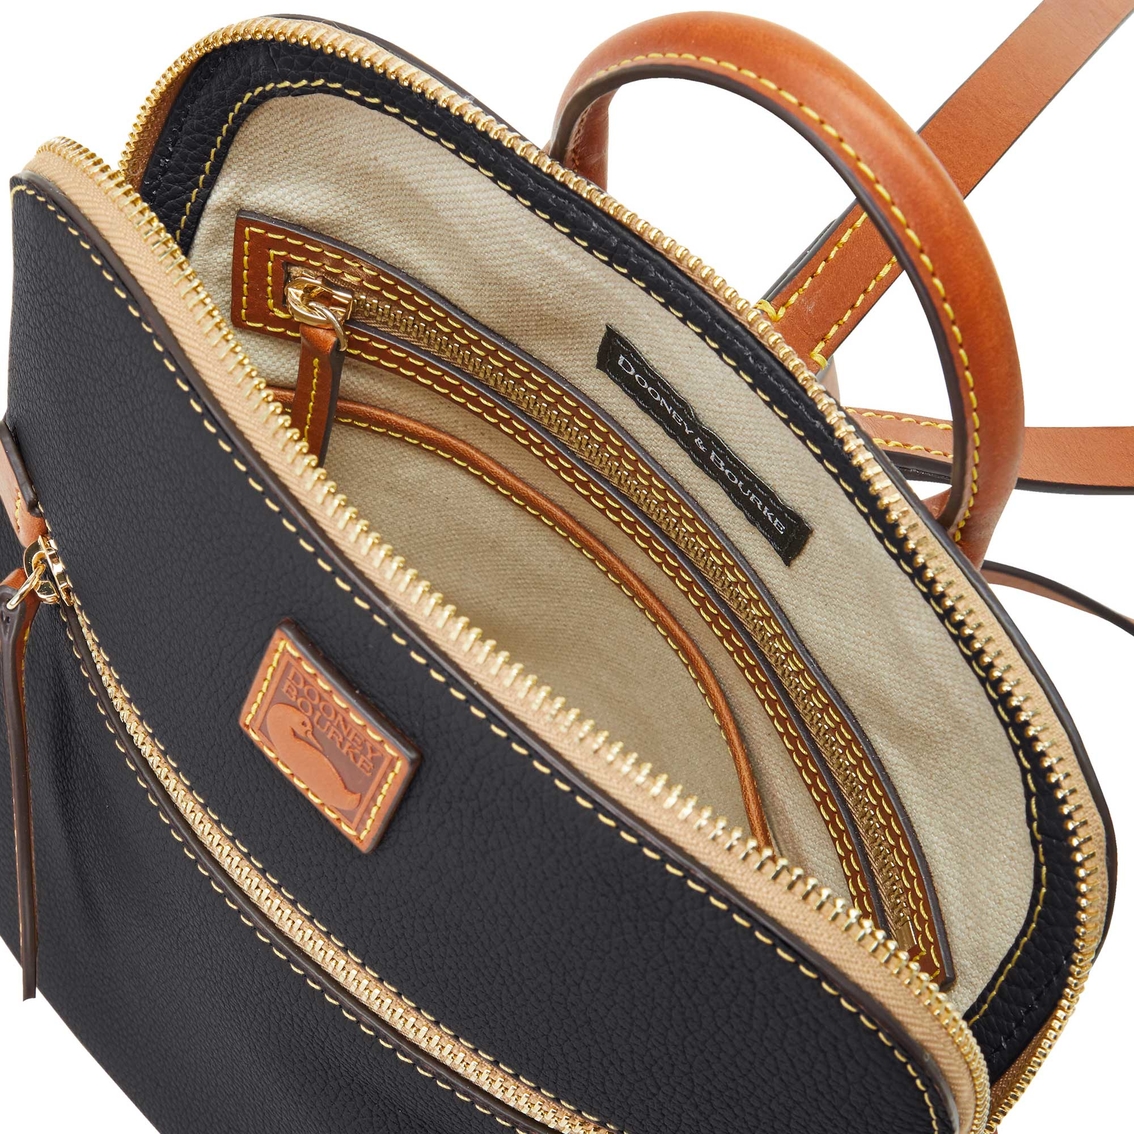 Dooney & Bourke Small Zip Sac Shoulder Bag